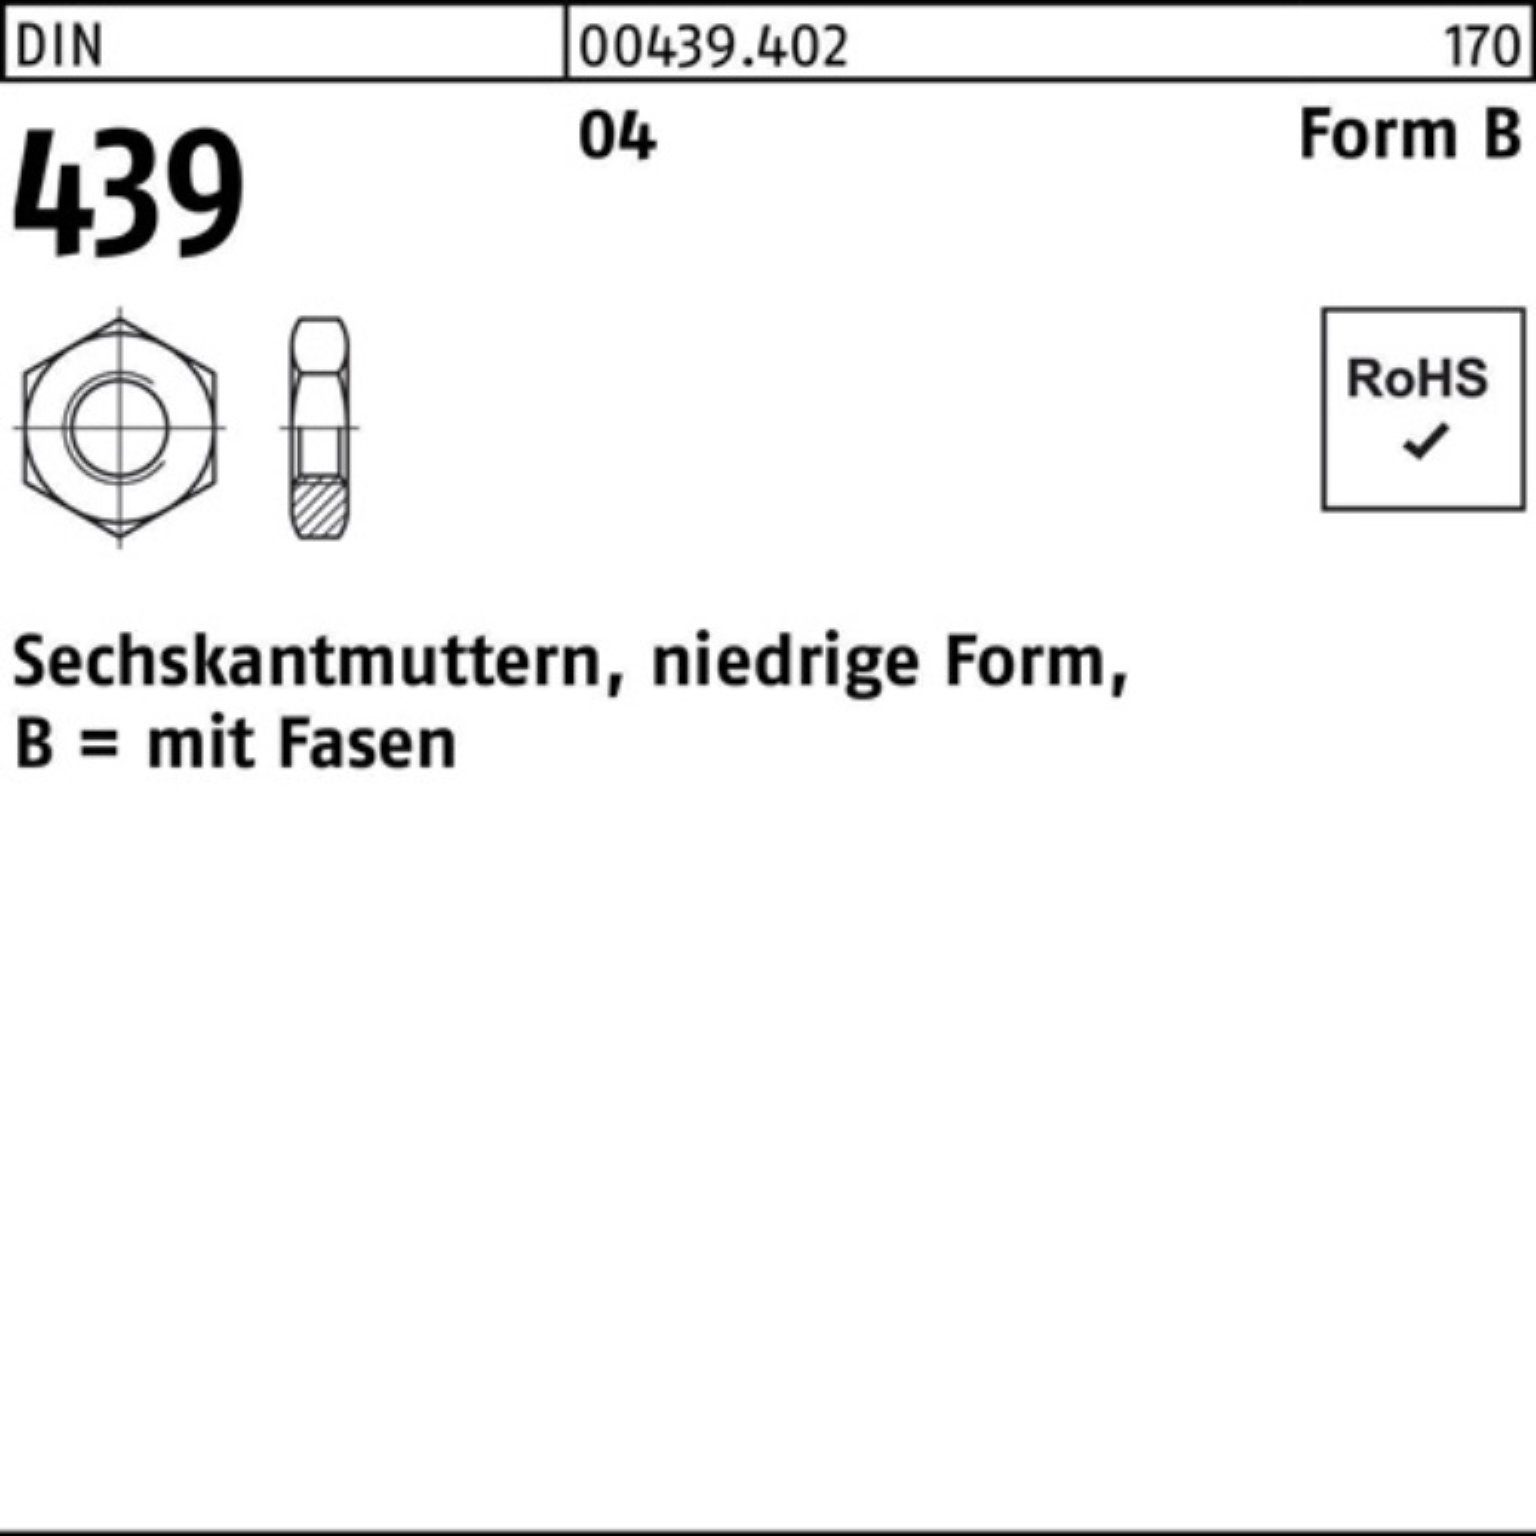 Muttern Pack 10 Automatenstahl 439/ISO DIN 100er BM 4035 Reyher FormB Sechskantmutter